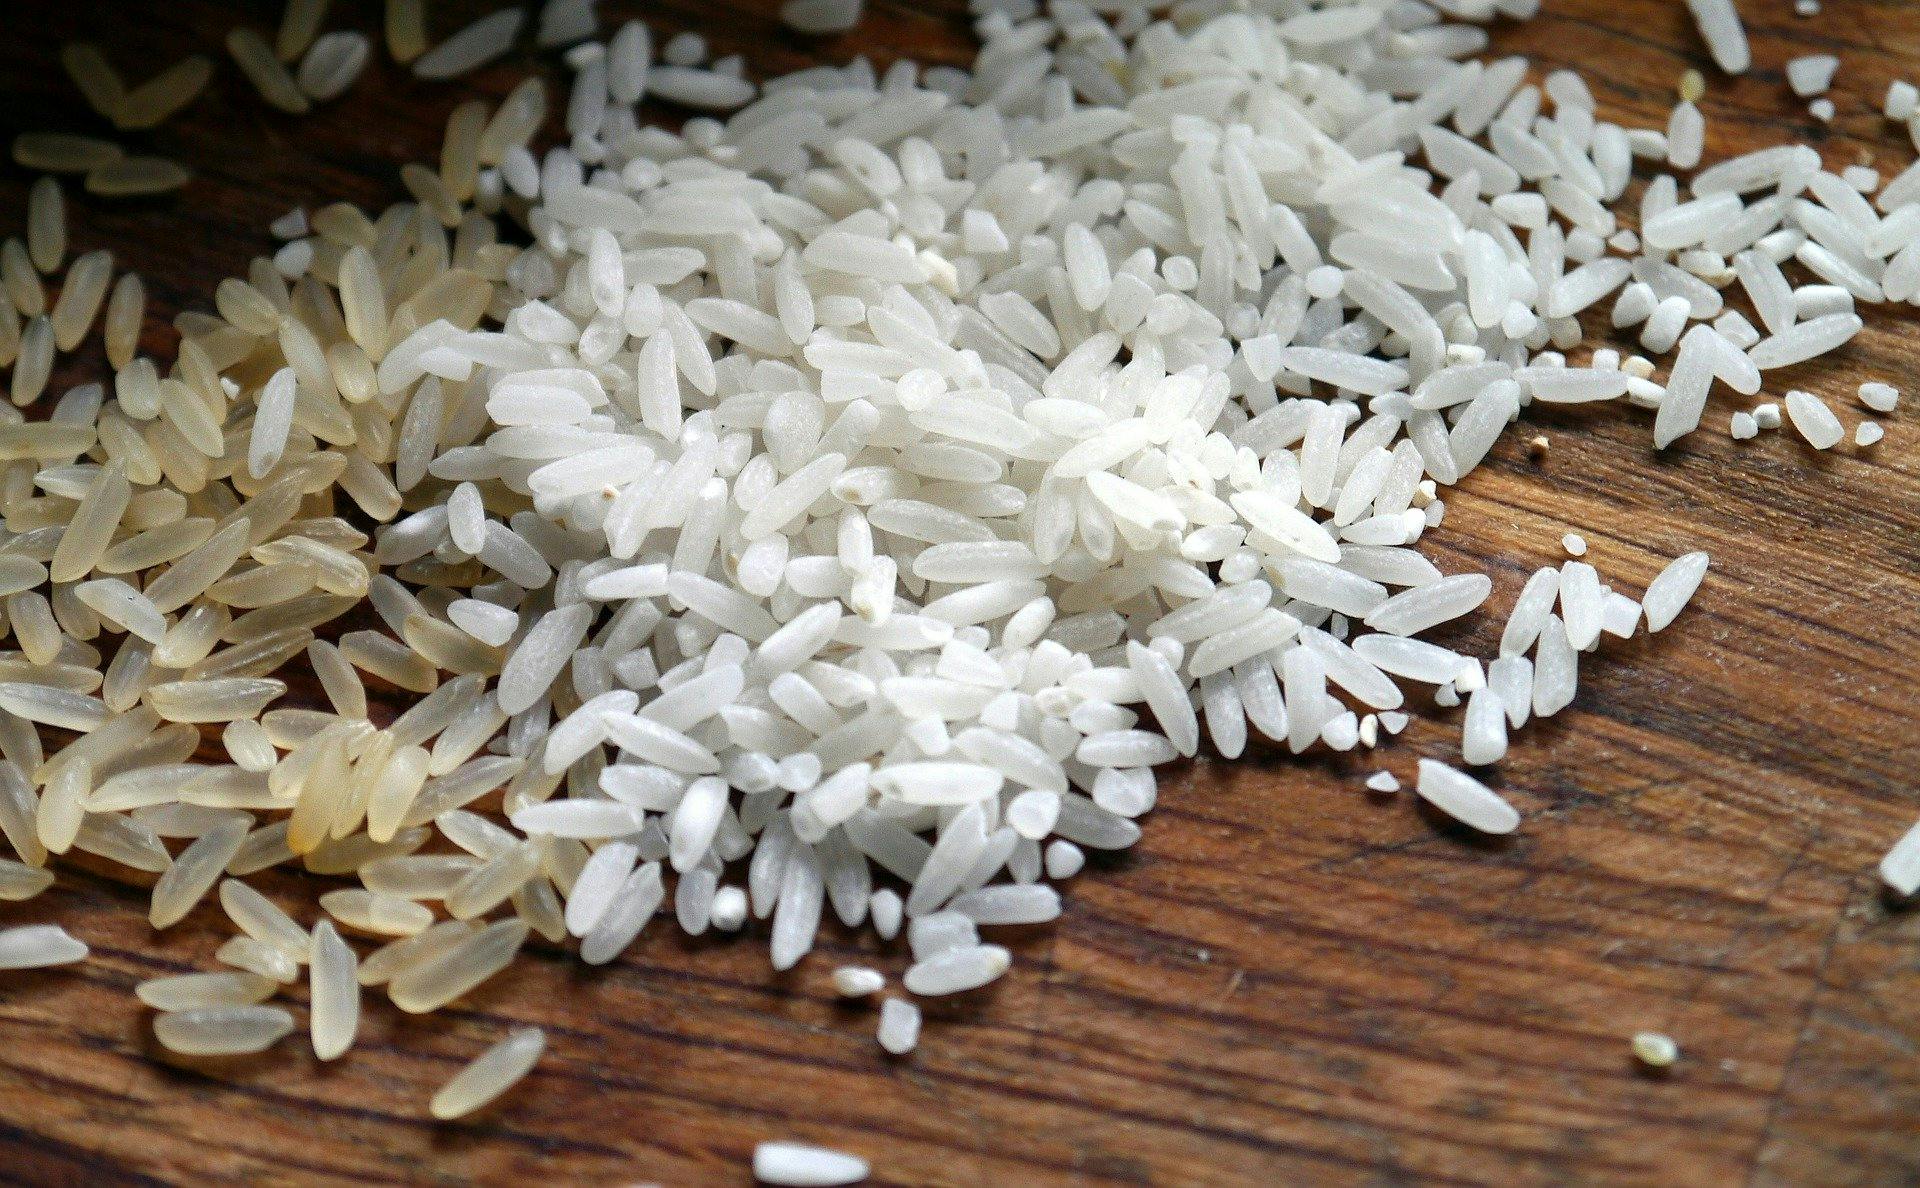 Farine de riz gluant